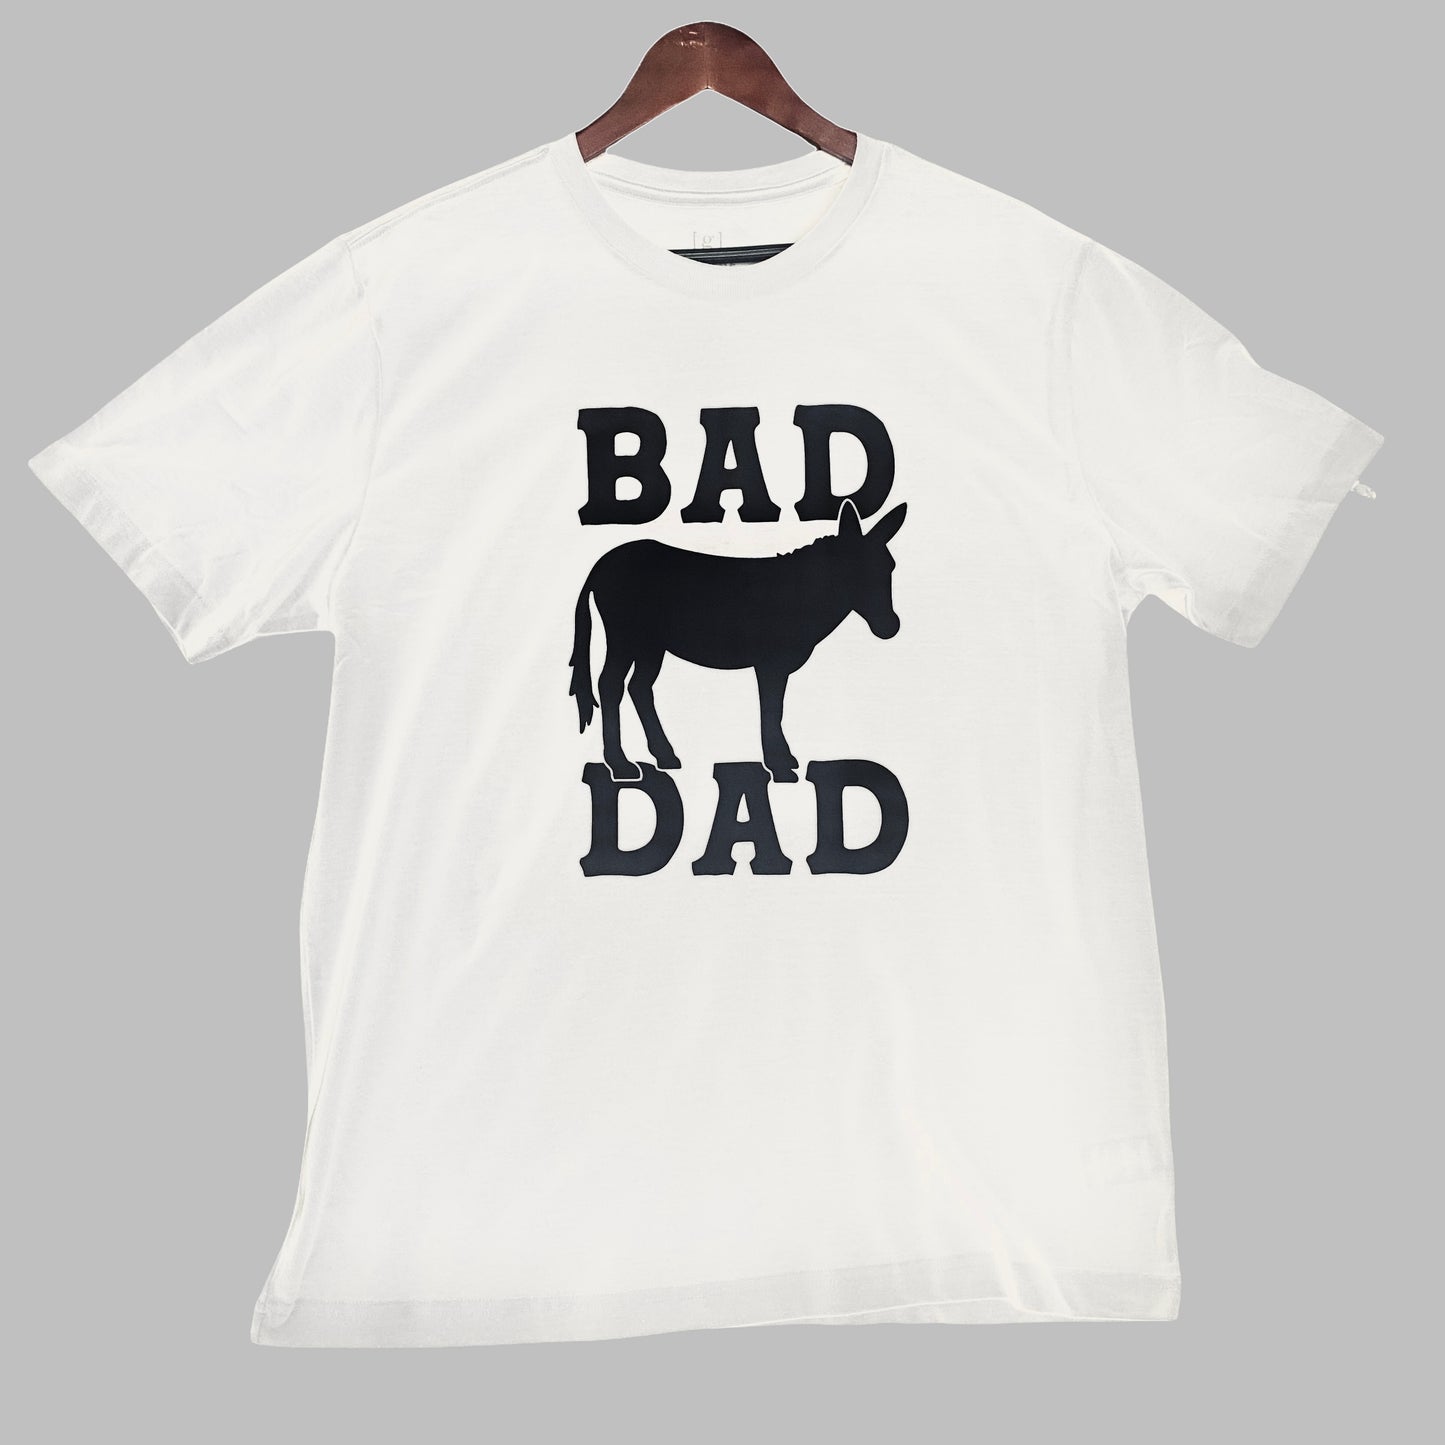 BAD ASS DAD T Shirt